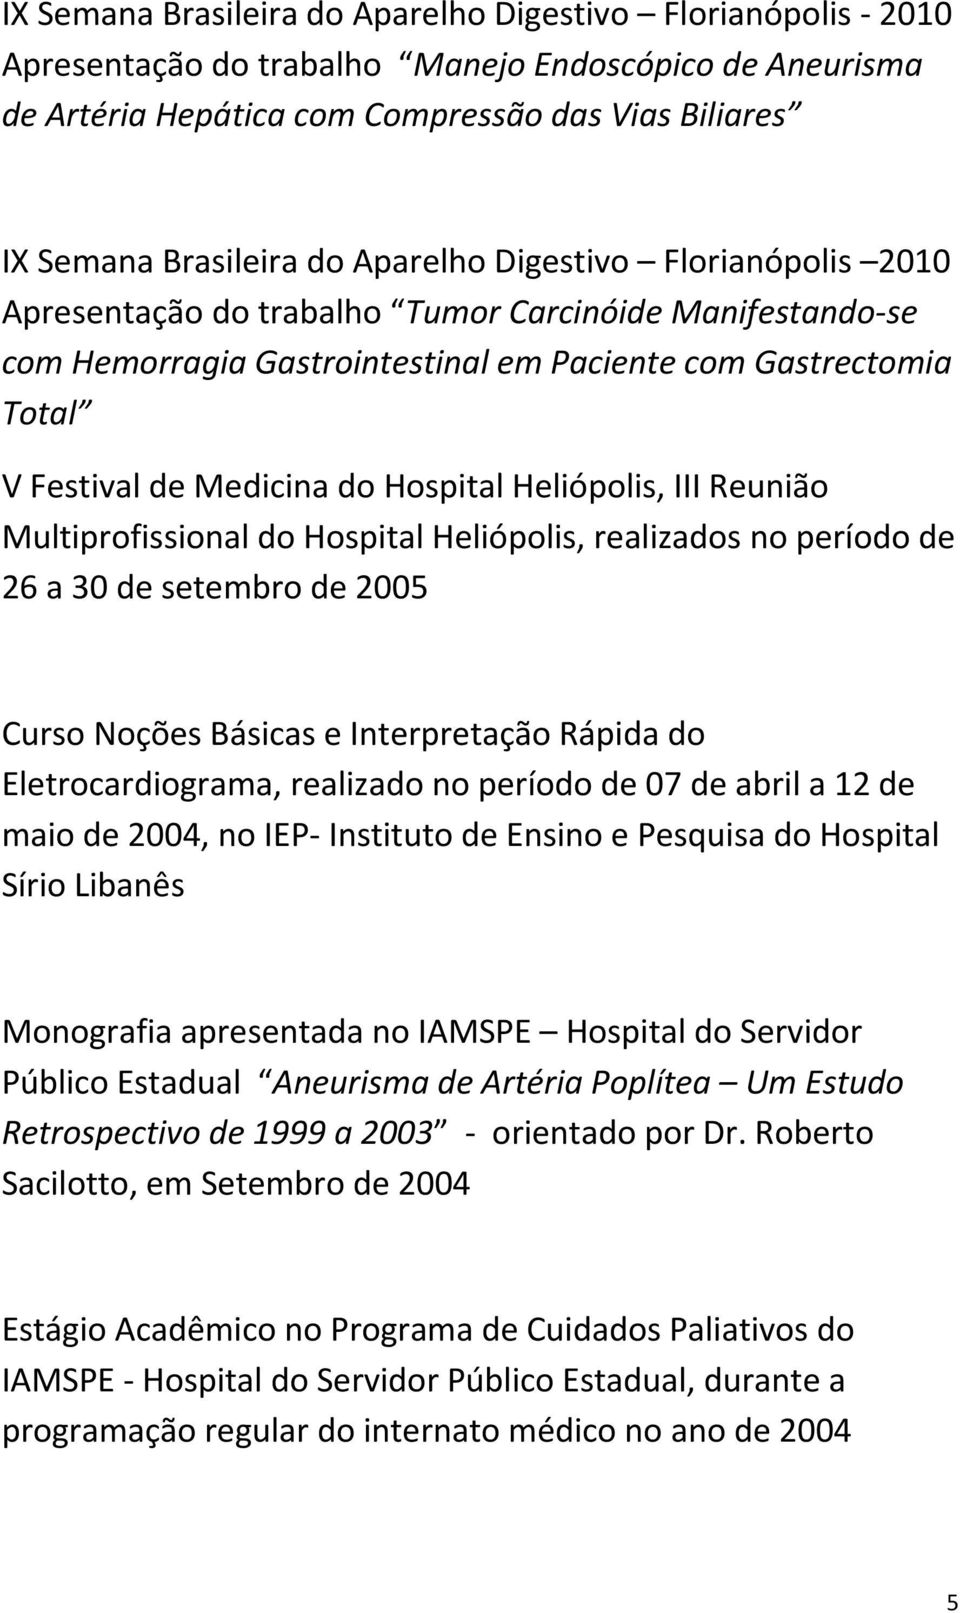 Heliópolis, III Reunião Multiprofissional do Hospital Heliópolis, realizados no período de 26 a 30 de setembro de 2005 Curso Noções Básicas e Interpretação Rápida do Eletrocardiograma, realizado no